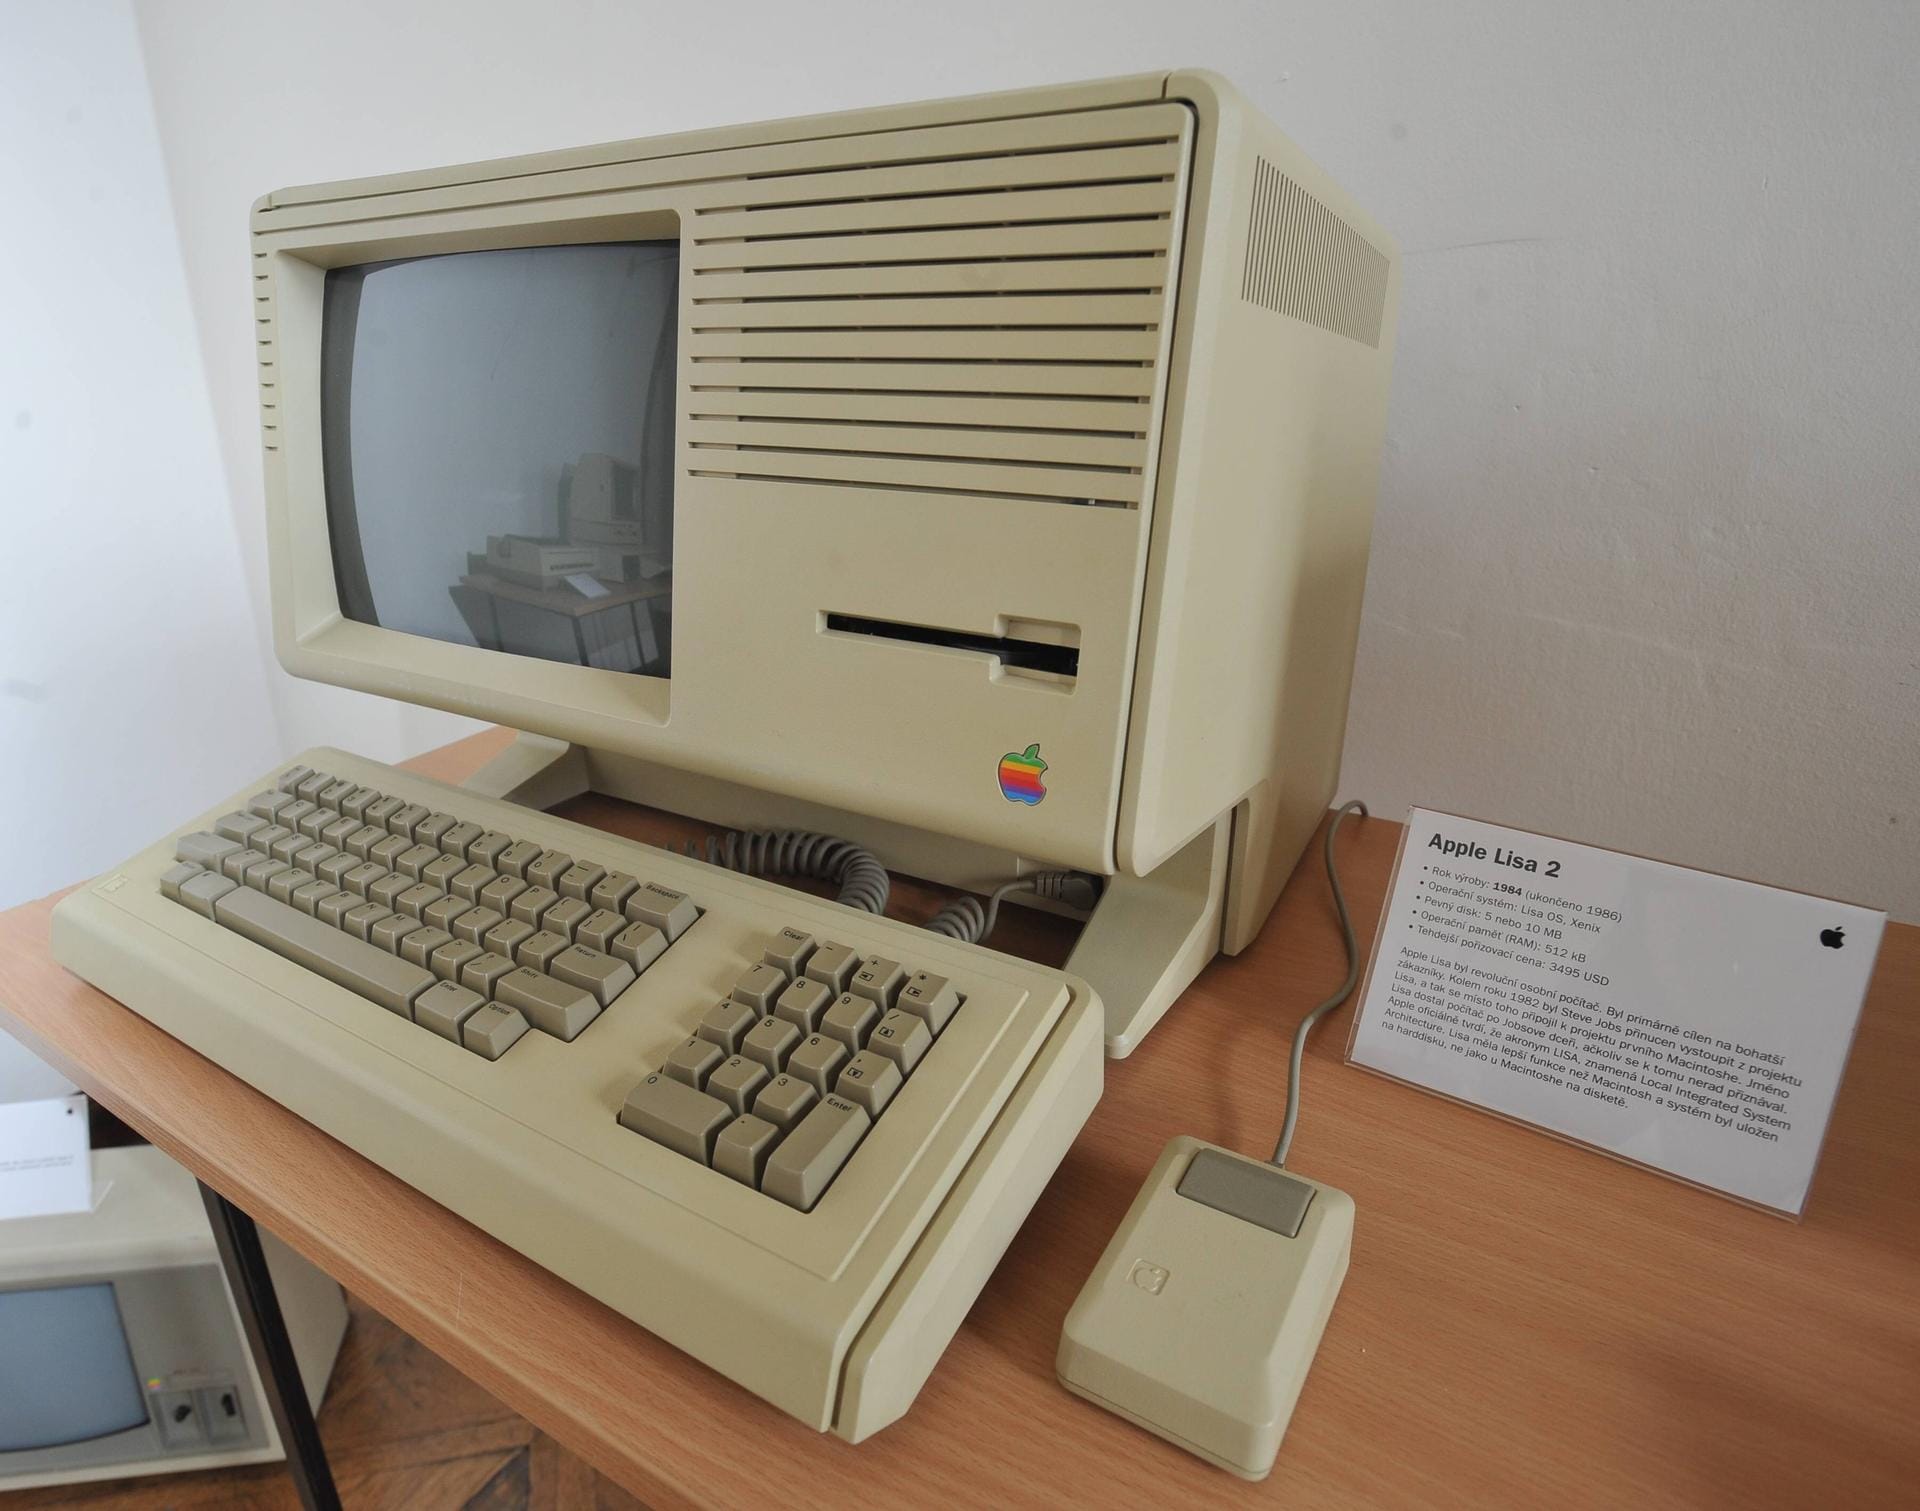 Apple-Mitgründer Steve Jobs sah den Alto 1979 und übernahm das Konzept der grafischen Bedienoberfläche. Apples "Lisa" war der erste Computer, der für die Maus ausgelegt war. Mit dem Macintosh erreichte die Maus 1984 den Durchbruch.